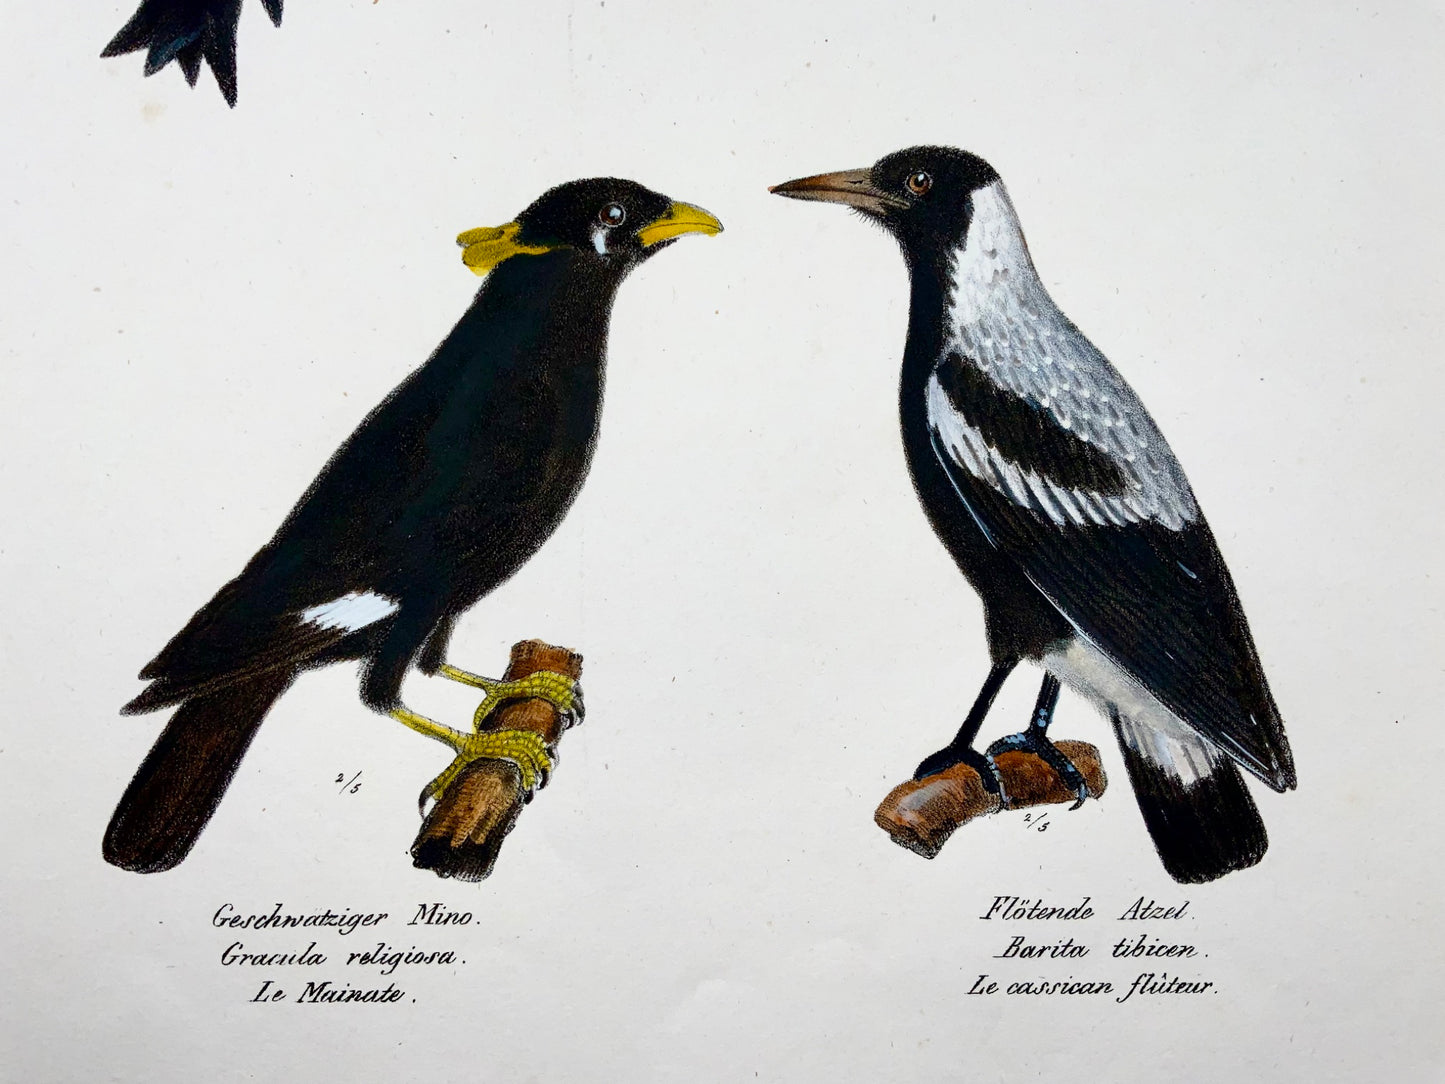 1830 Motmot, Myna, ornithologie, Brodtmann, lithographie folio coloriée à la main